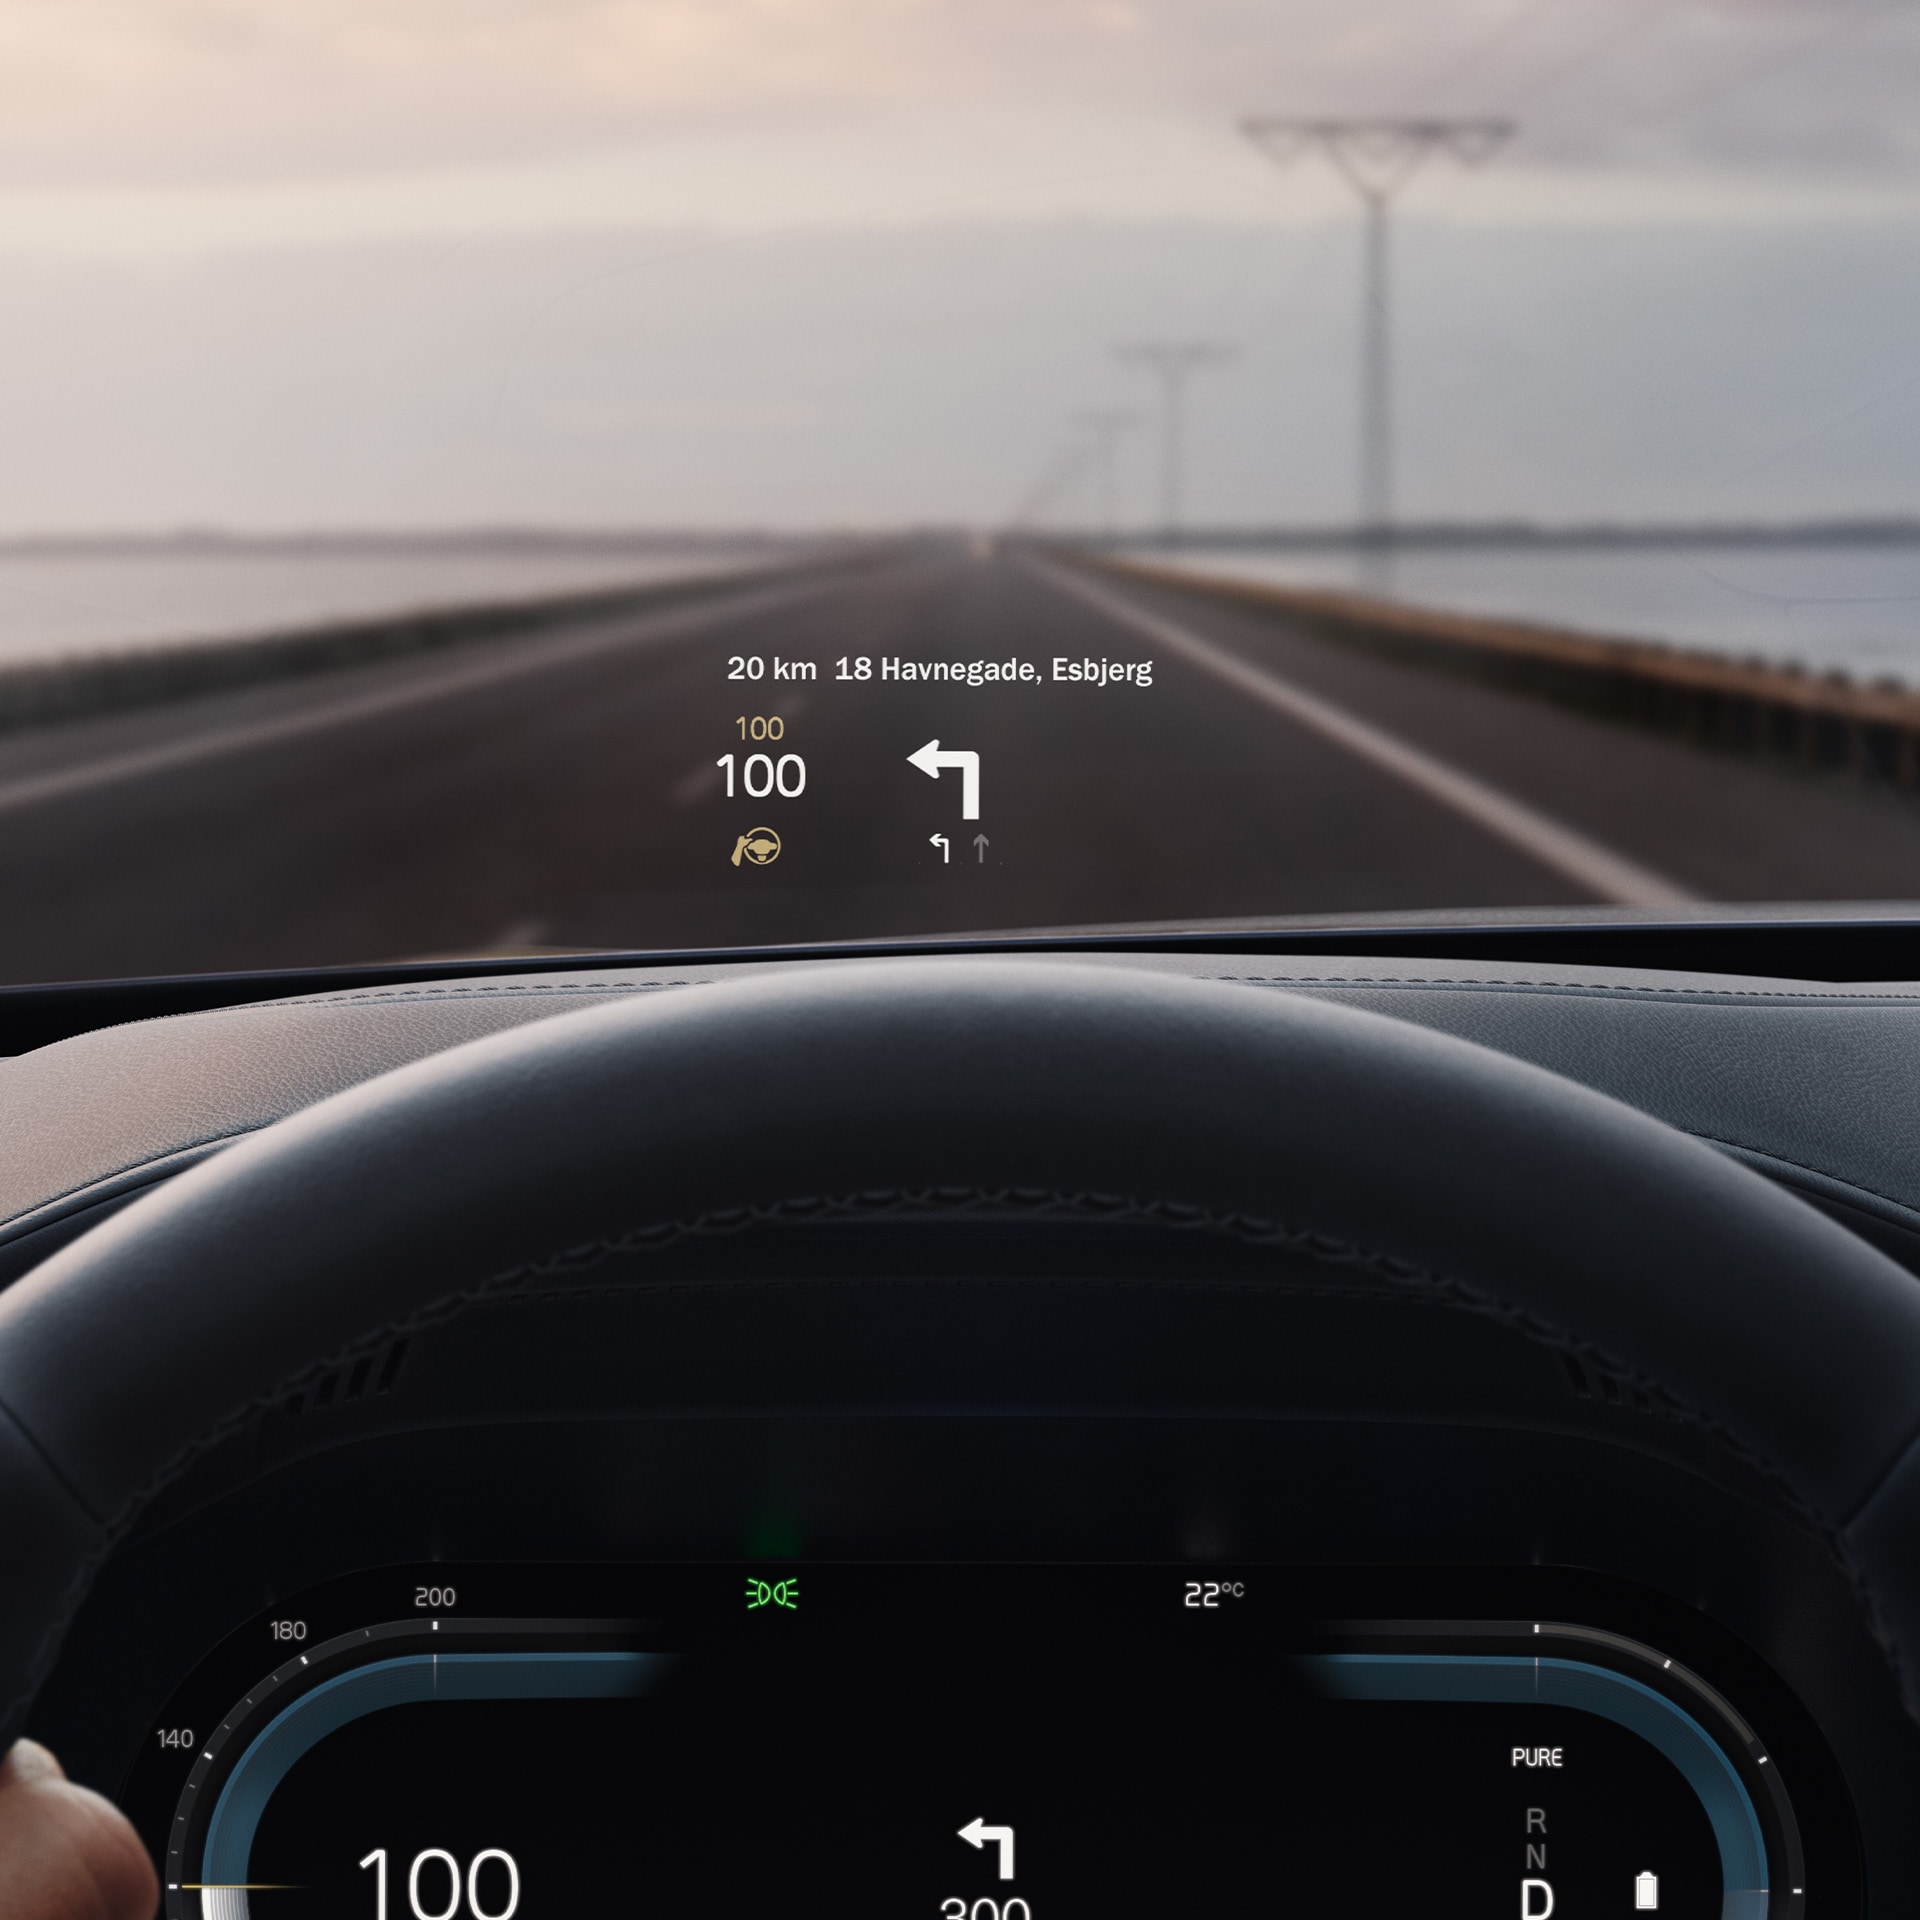 În interiorul unui Volvo, head-up display care arată viteza atinsă și navigarea pe parbriz.